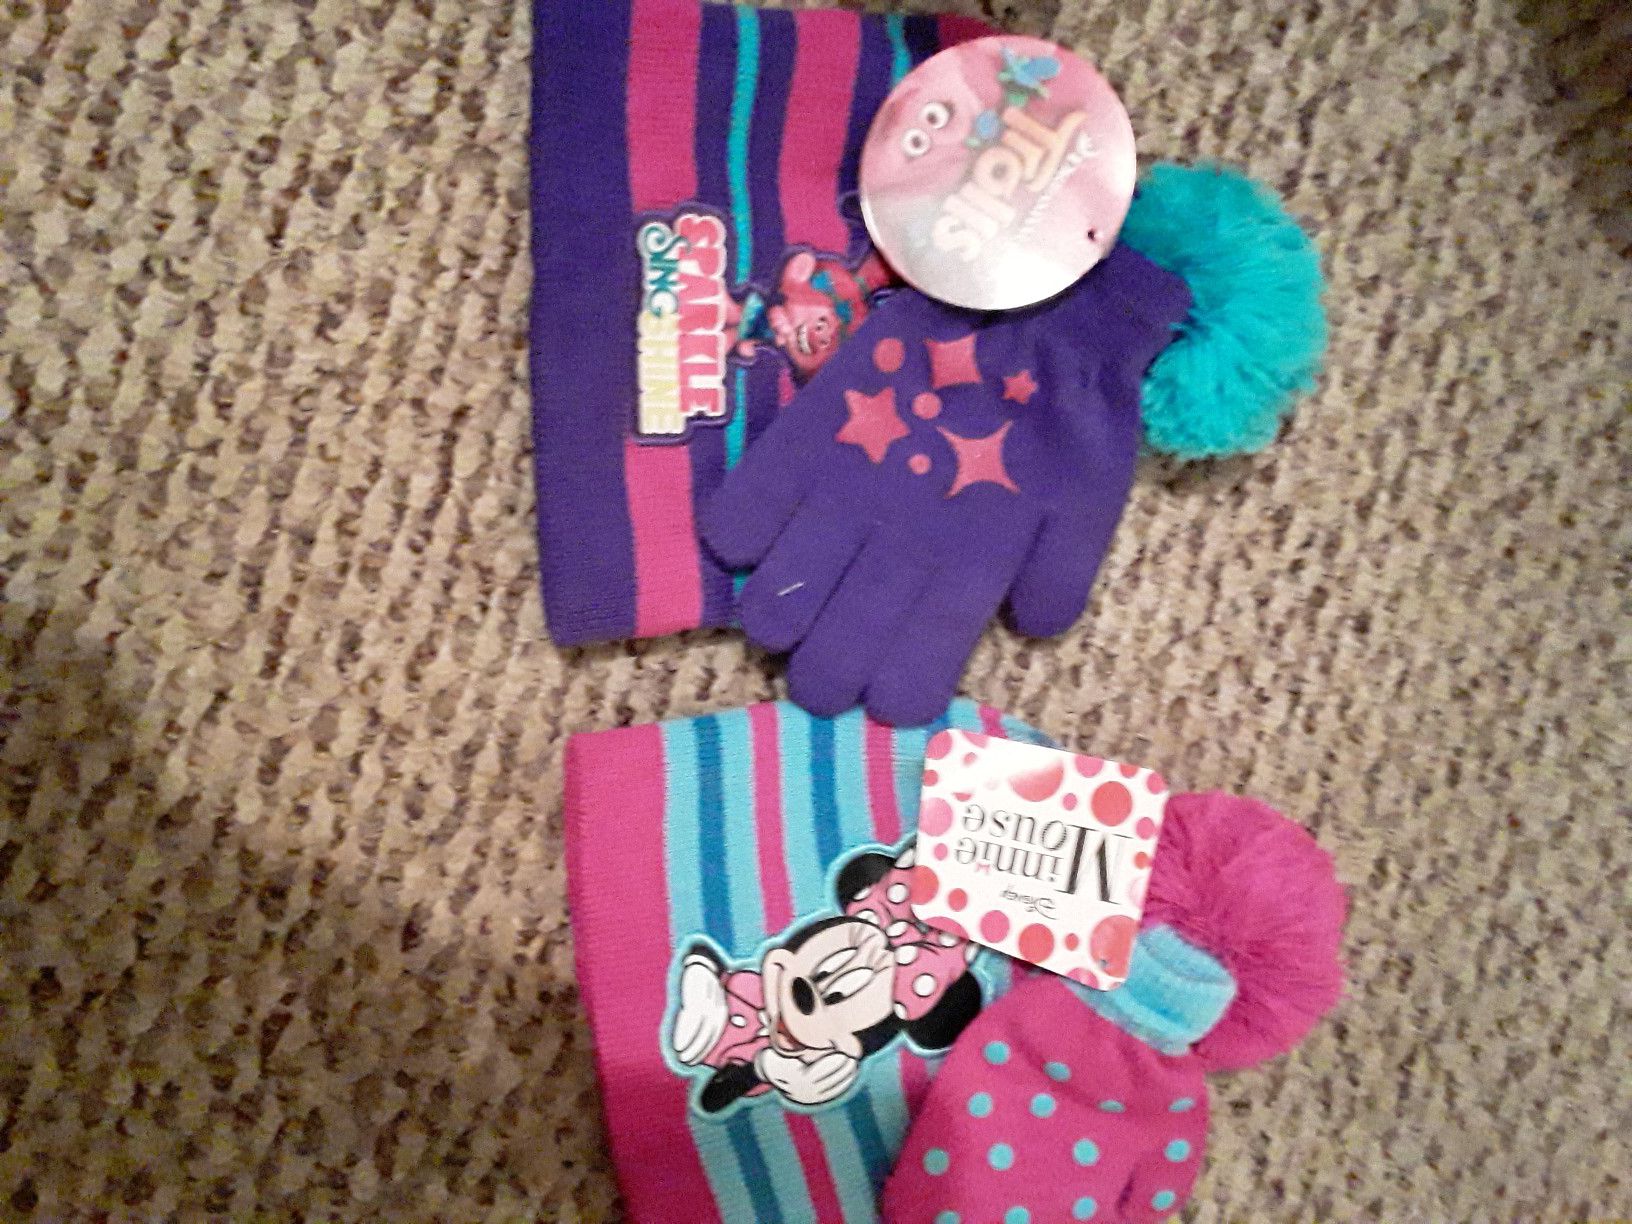 Troll & Minnie hat & glove sets.